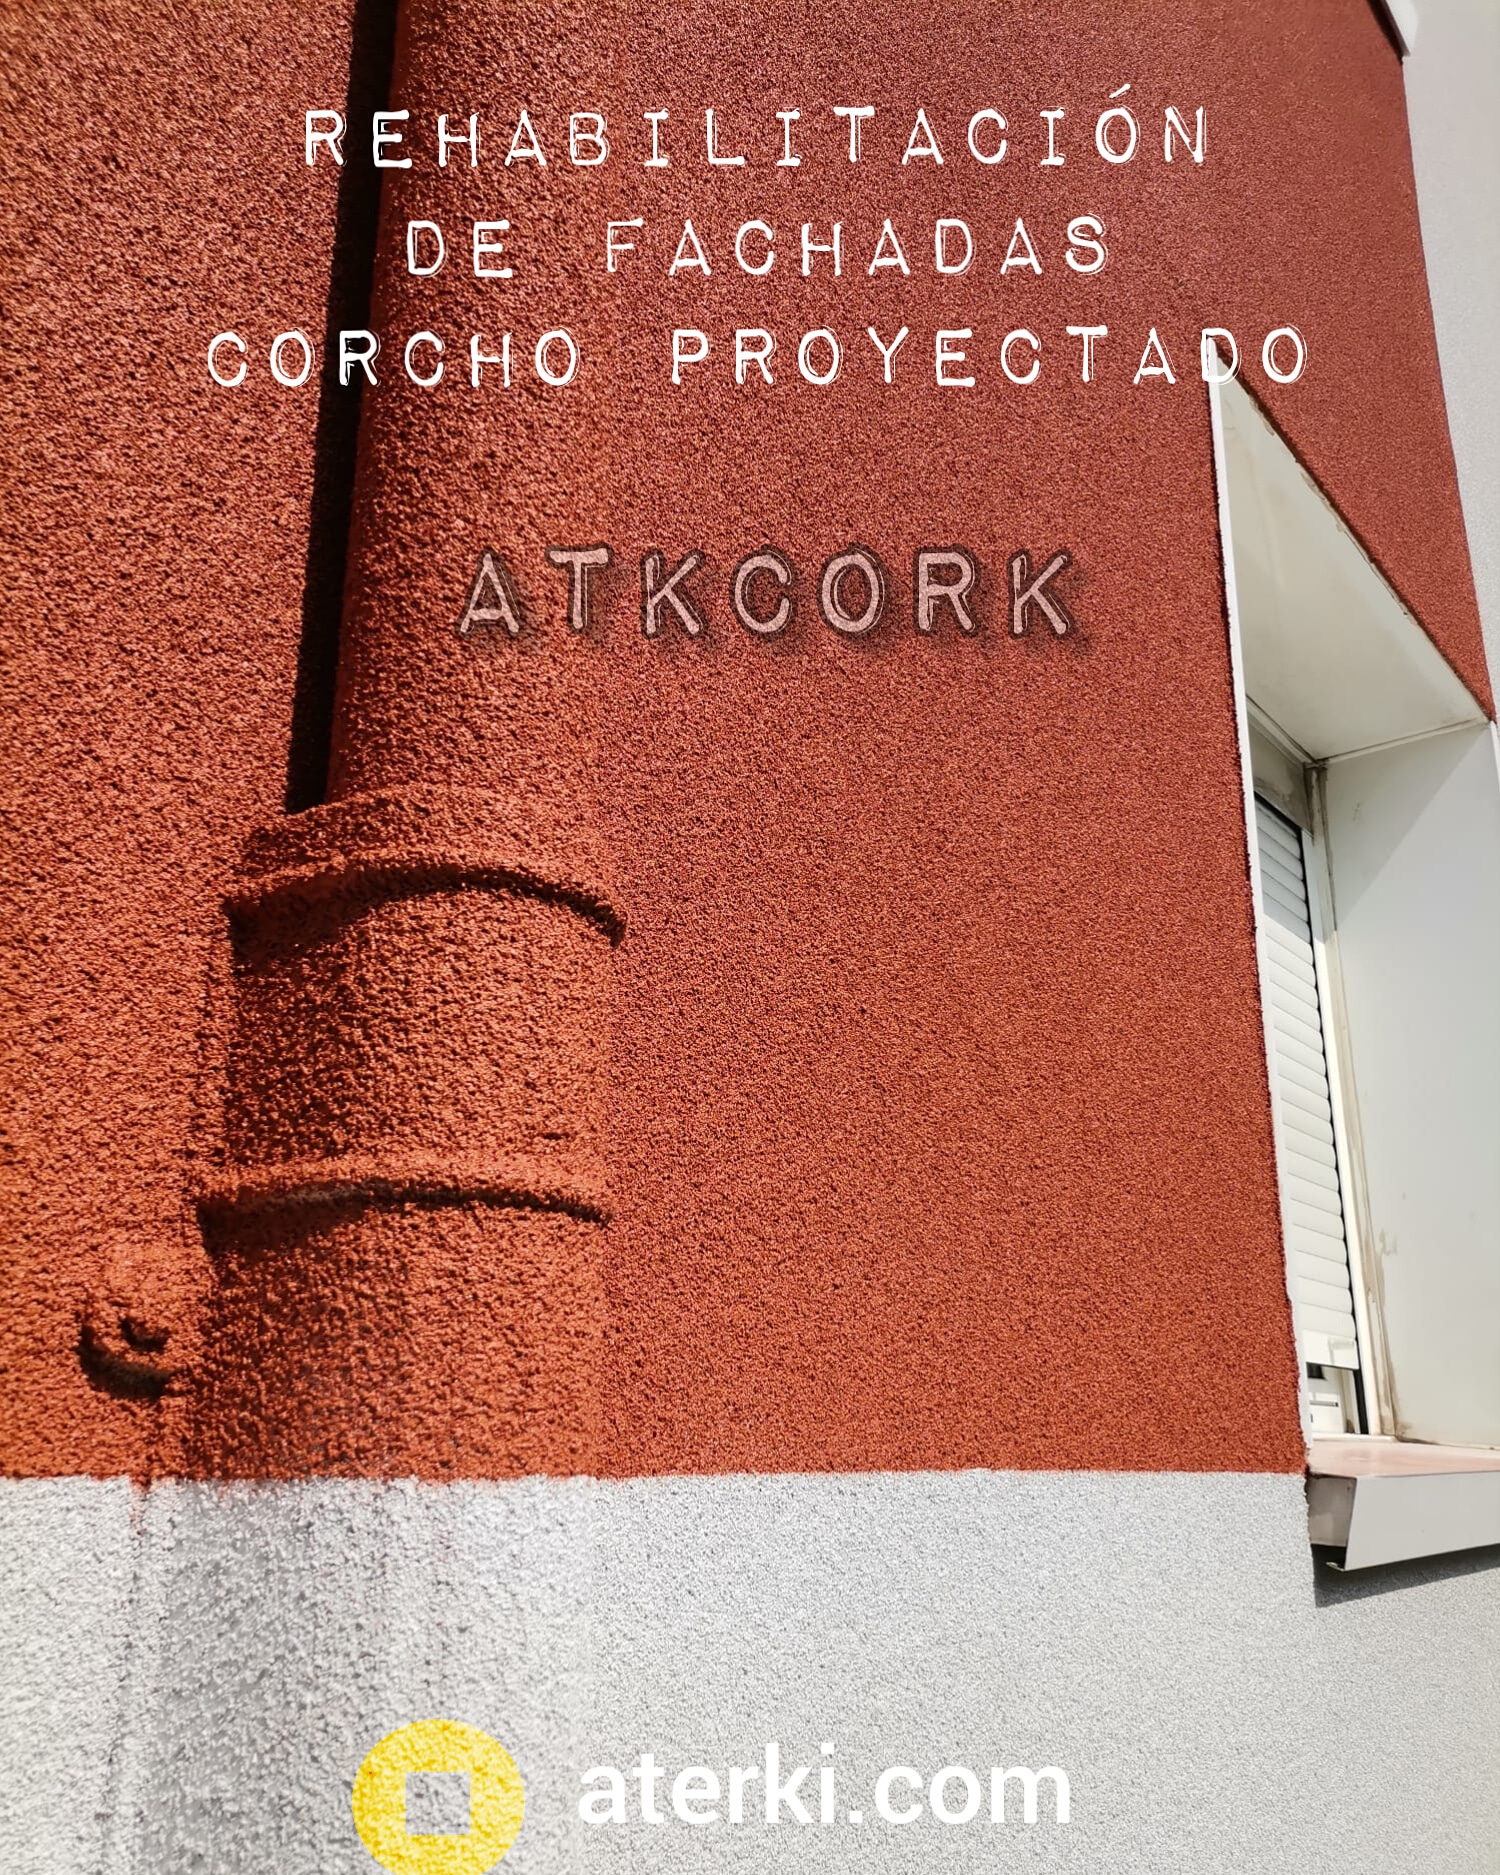 corcho-proyectado-atkcork